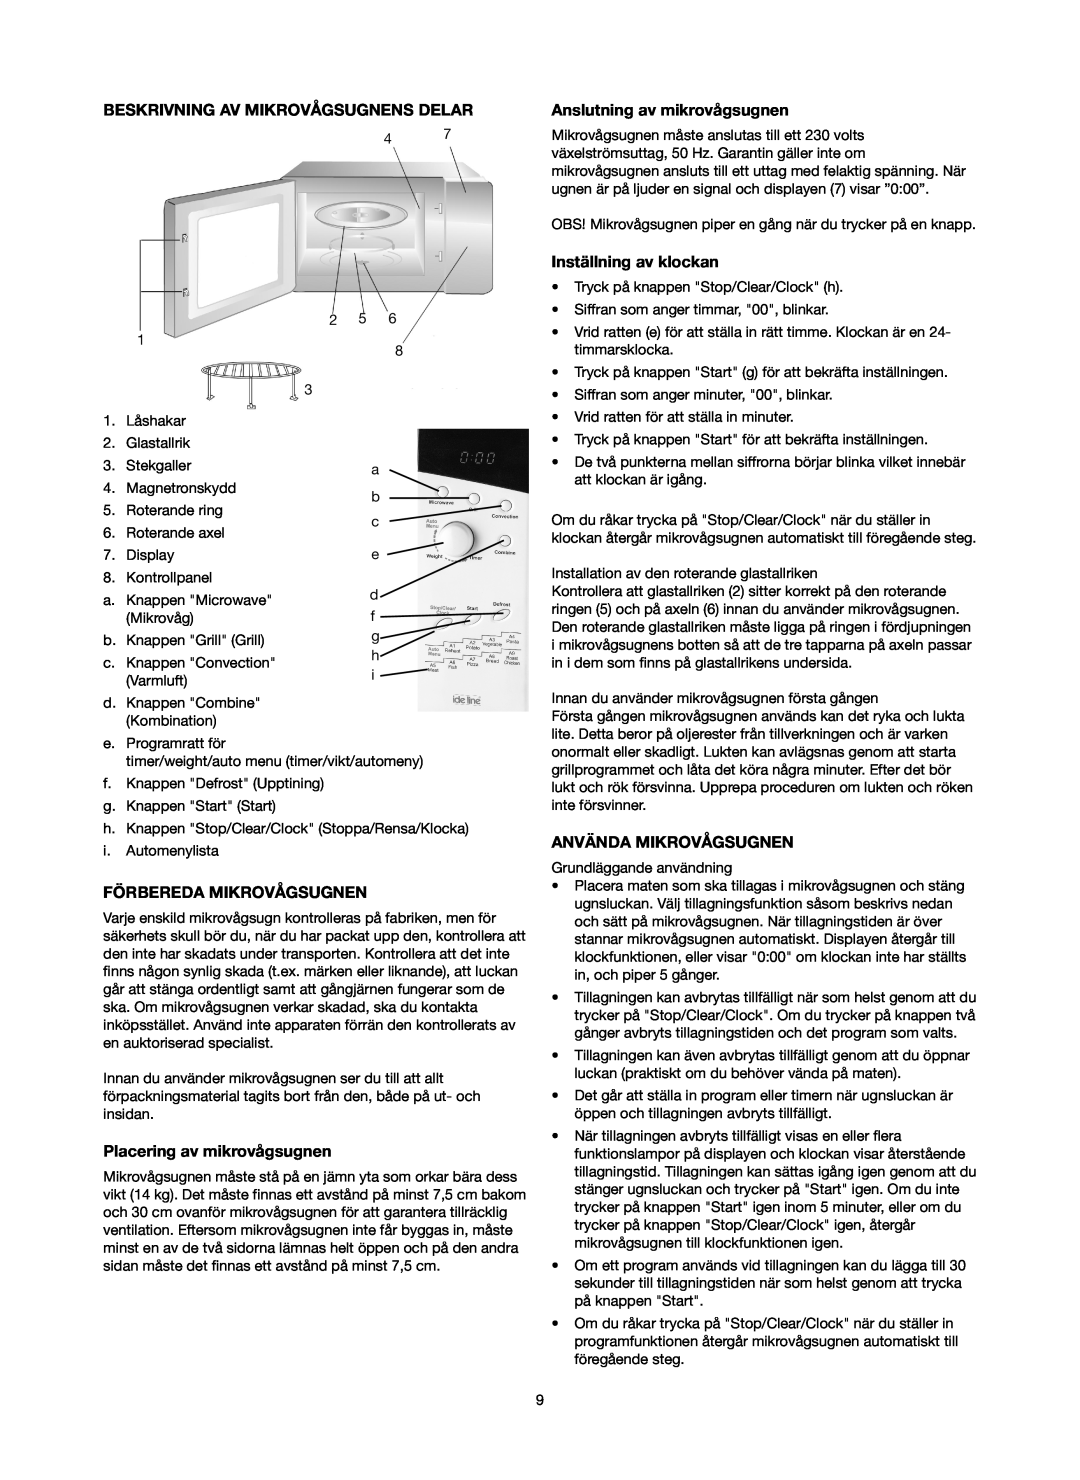 Melissa 753-130 manual Beskrivning Av Mikrovågsugnens Delar, Förbereda Mikrovågsugnen, Anslutning av mikrovågsugnen 